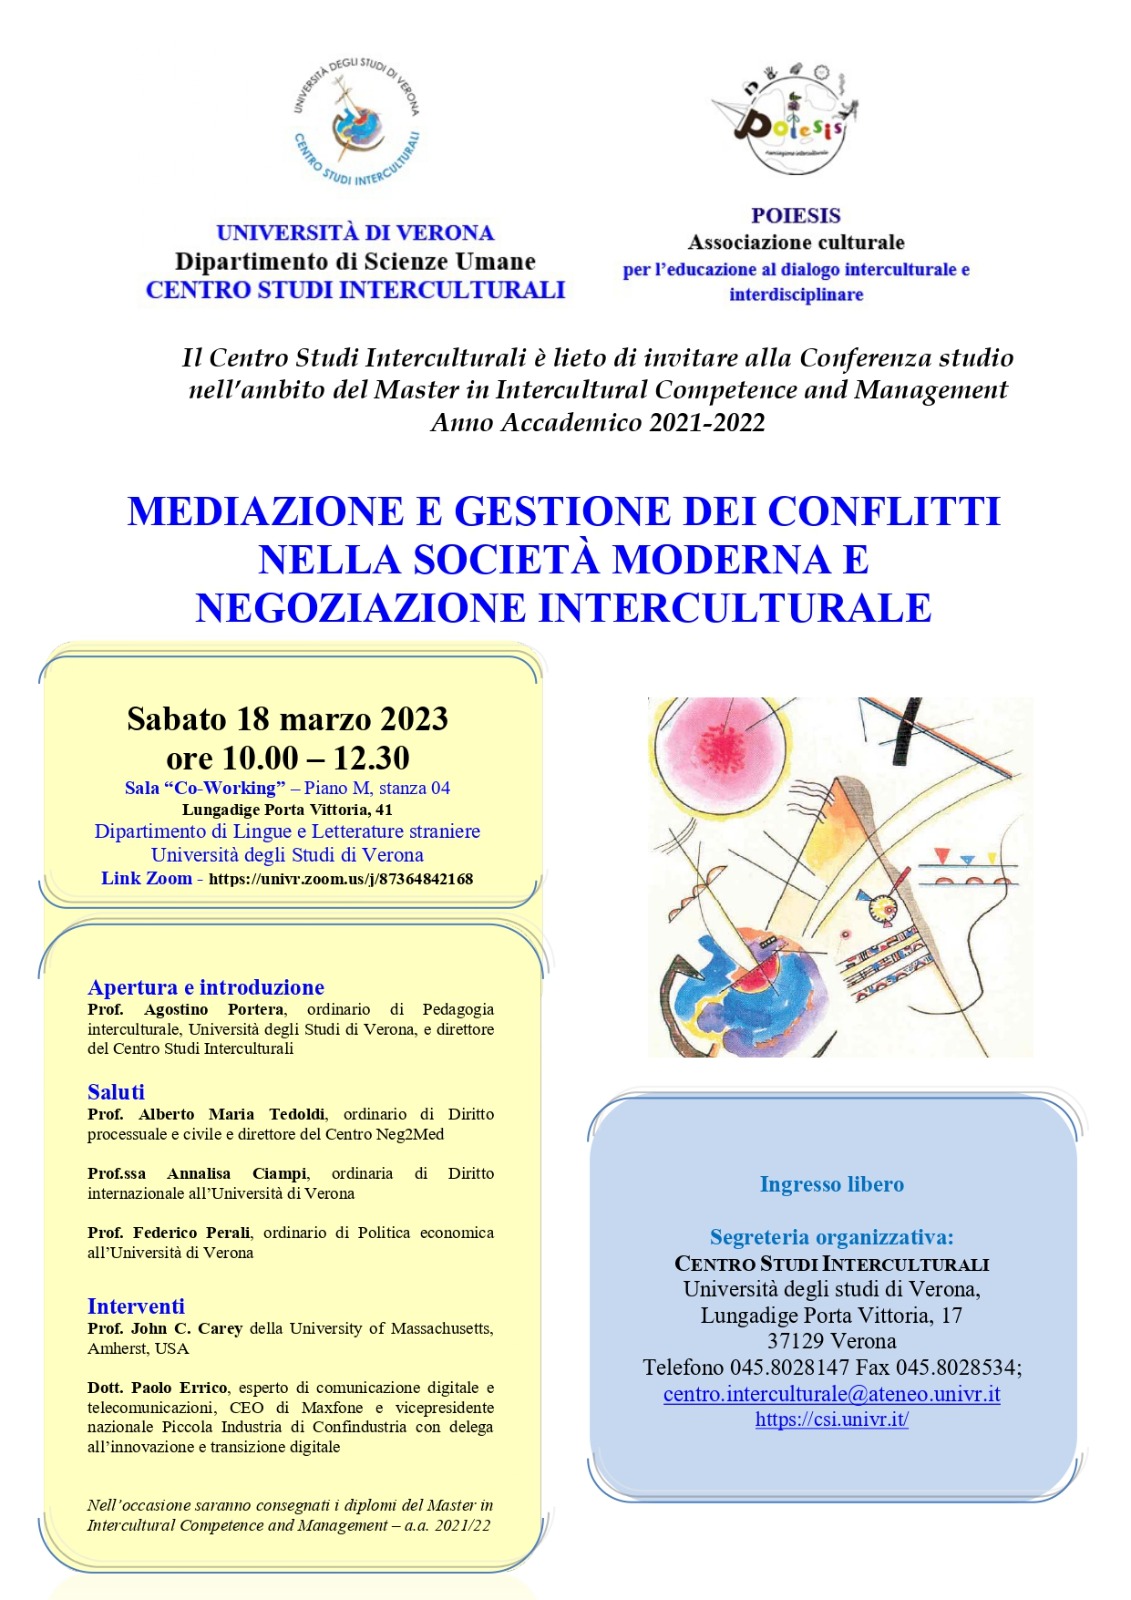 Mediazione Interculturale - Negoziazione - conferenza - Centro Studi Interculturali - UniVerona